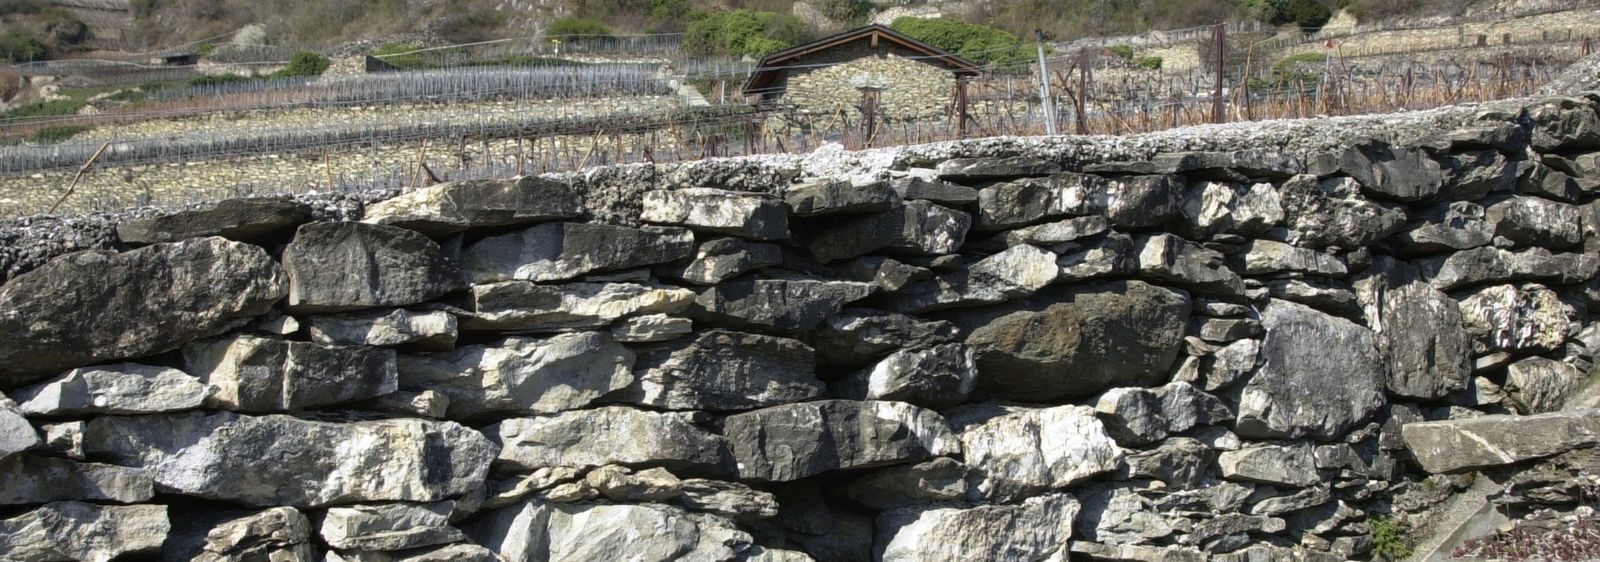 Hommage aux vignerons Valaisans qui ont façonnés grace à leur savoir-faire de magnifiques murs en pierre de taille.